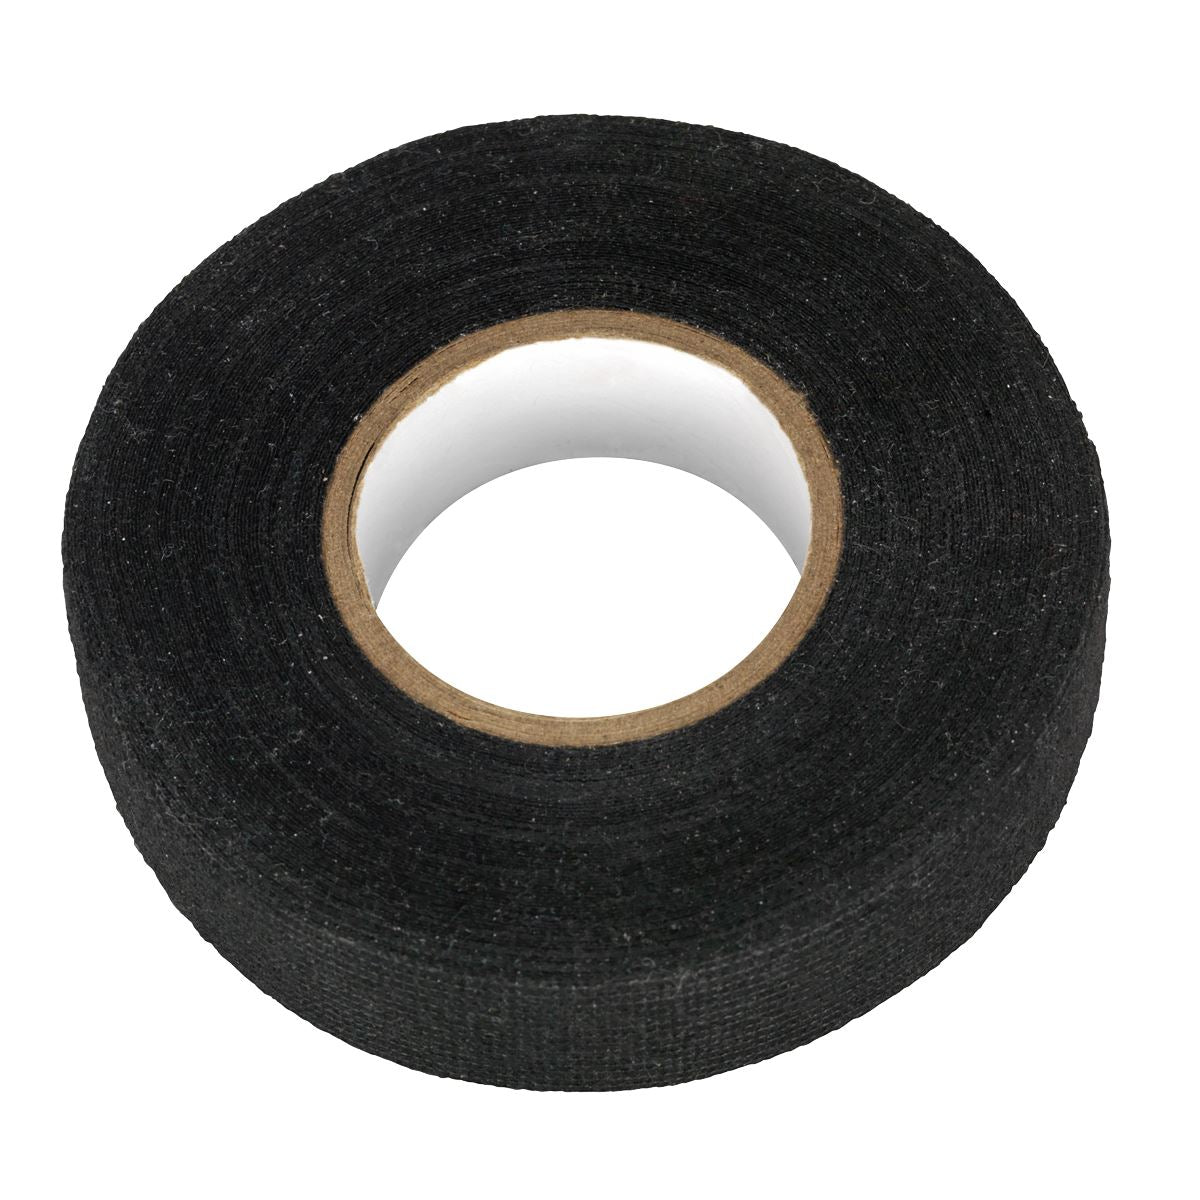 Sealey Fleece Tape 19mm x 15m Black